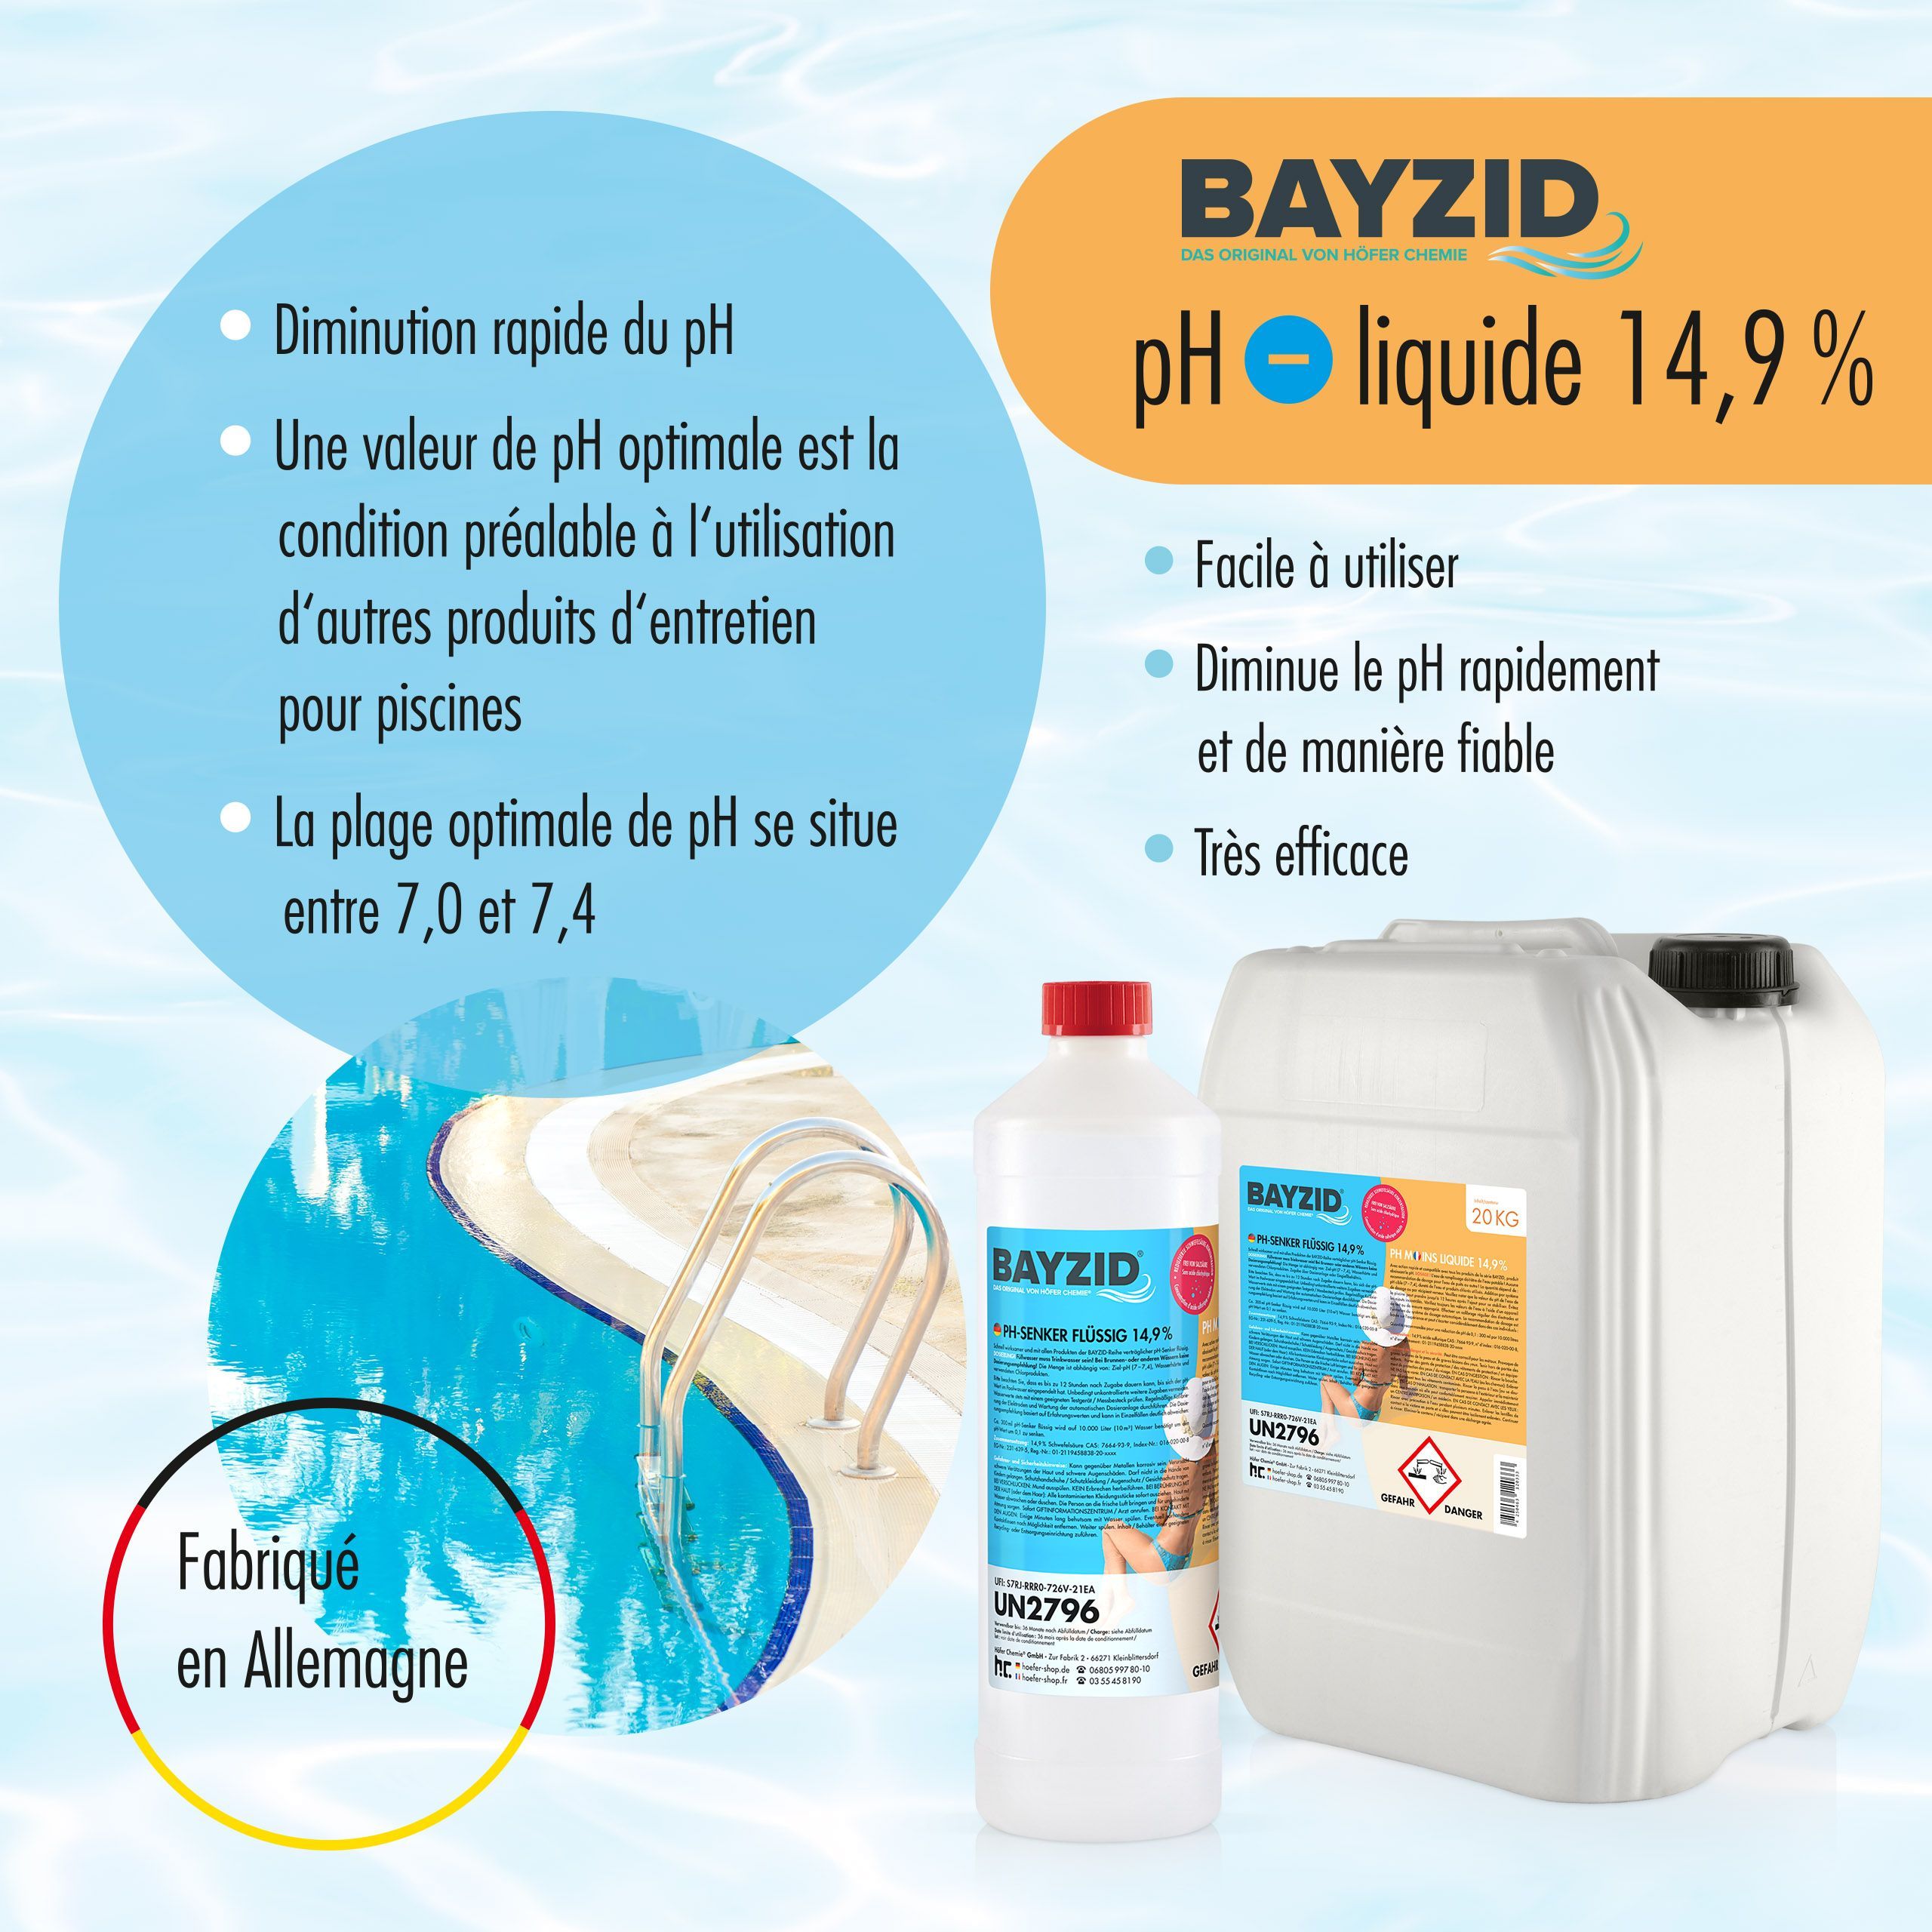 1 kg BAYZID® pH Minus flüssig 14,9%